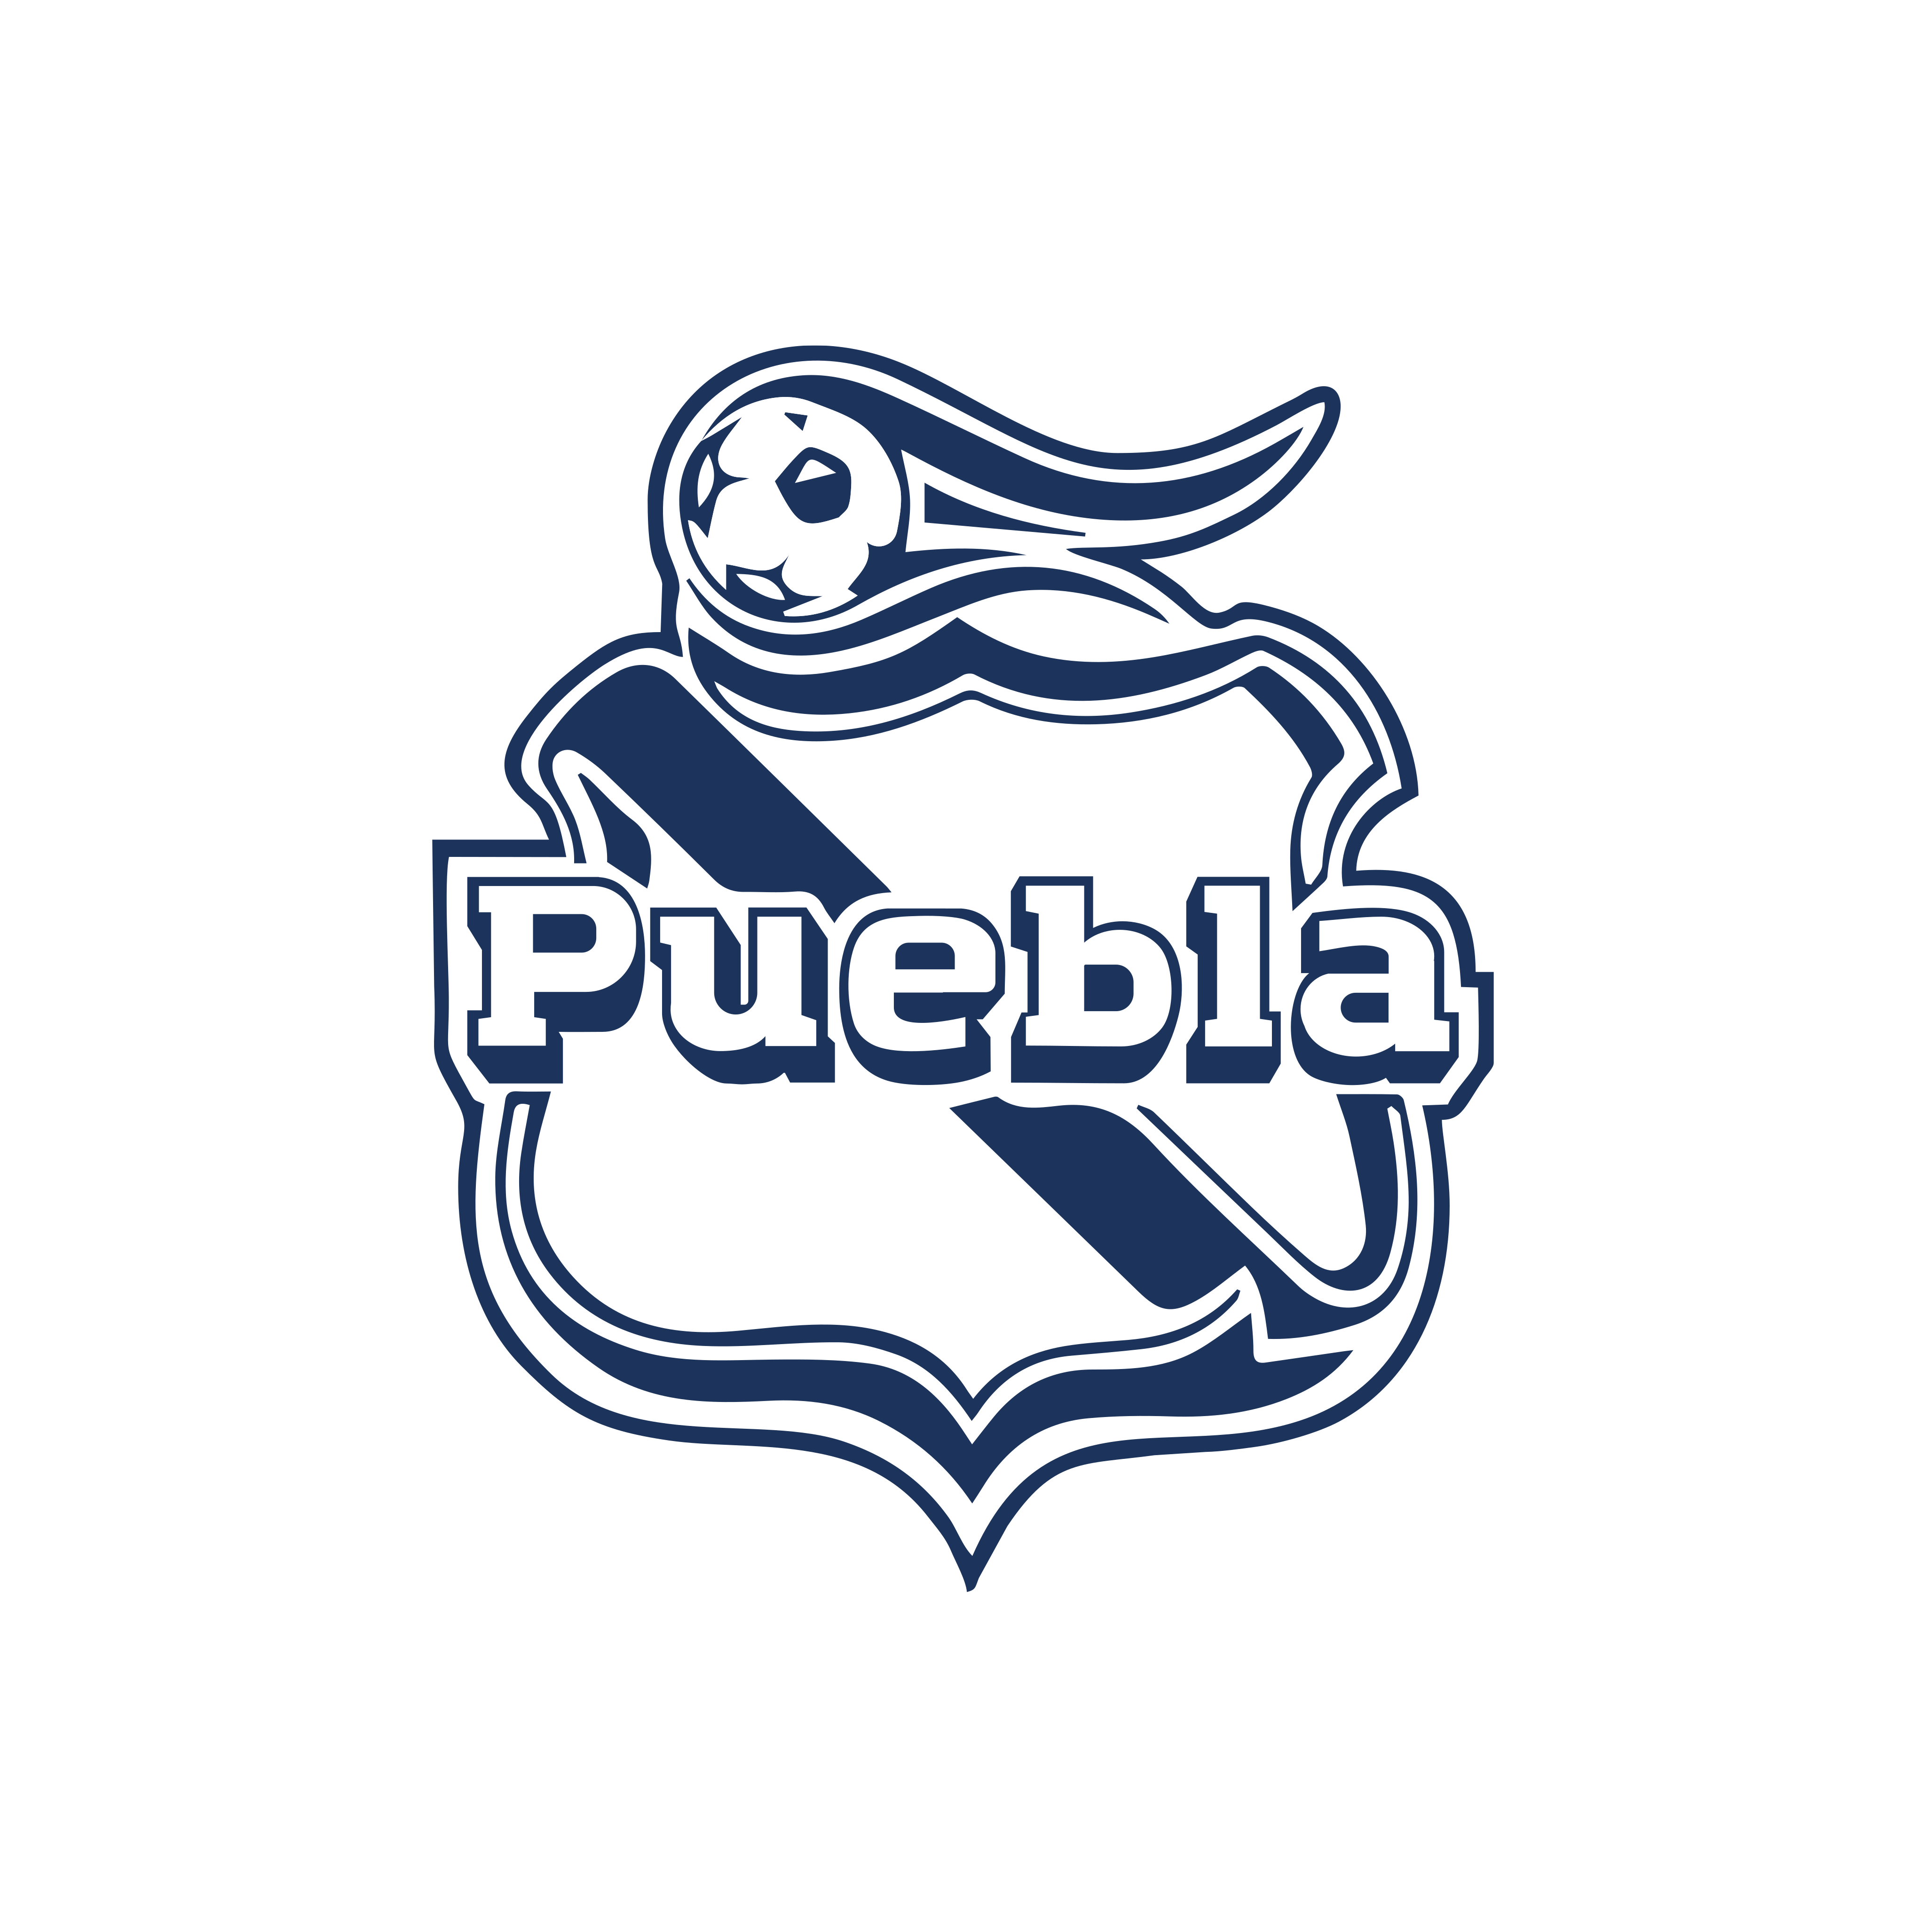 club puebla logo 0 - Club Puebla Logo